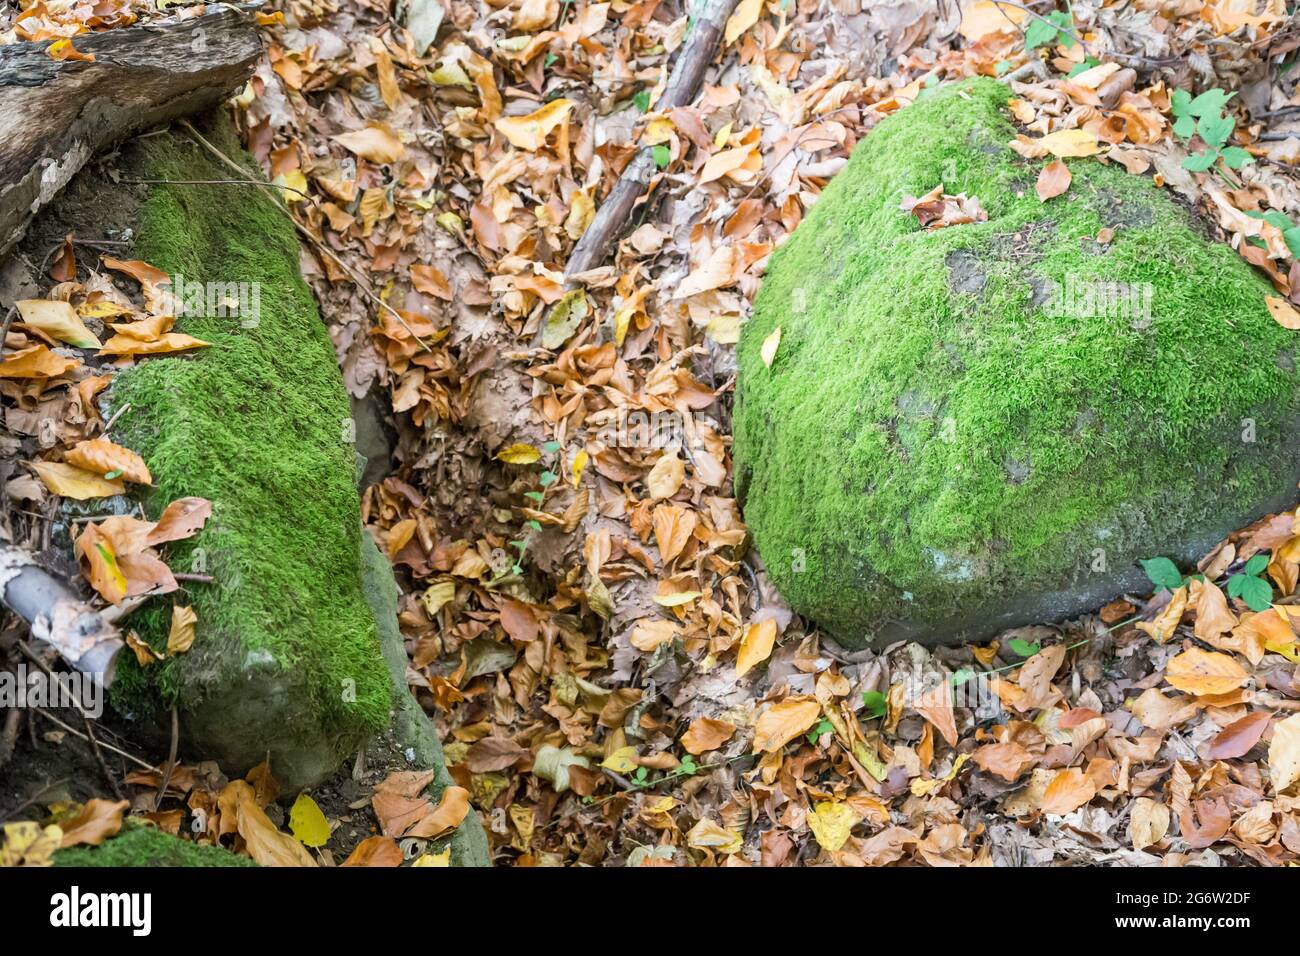 Herbst im Wald - Steine mit grünem Moos auf einem Teppich aus bunten Blättern Stockfoto